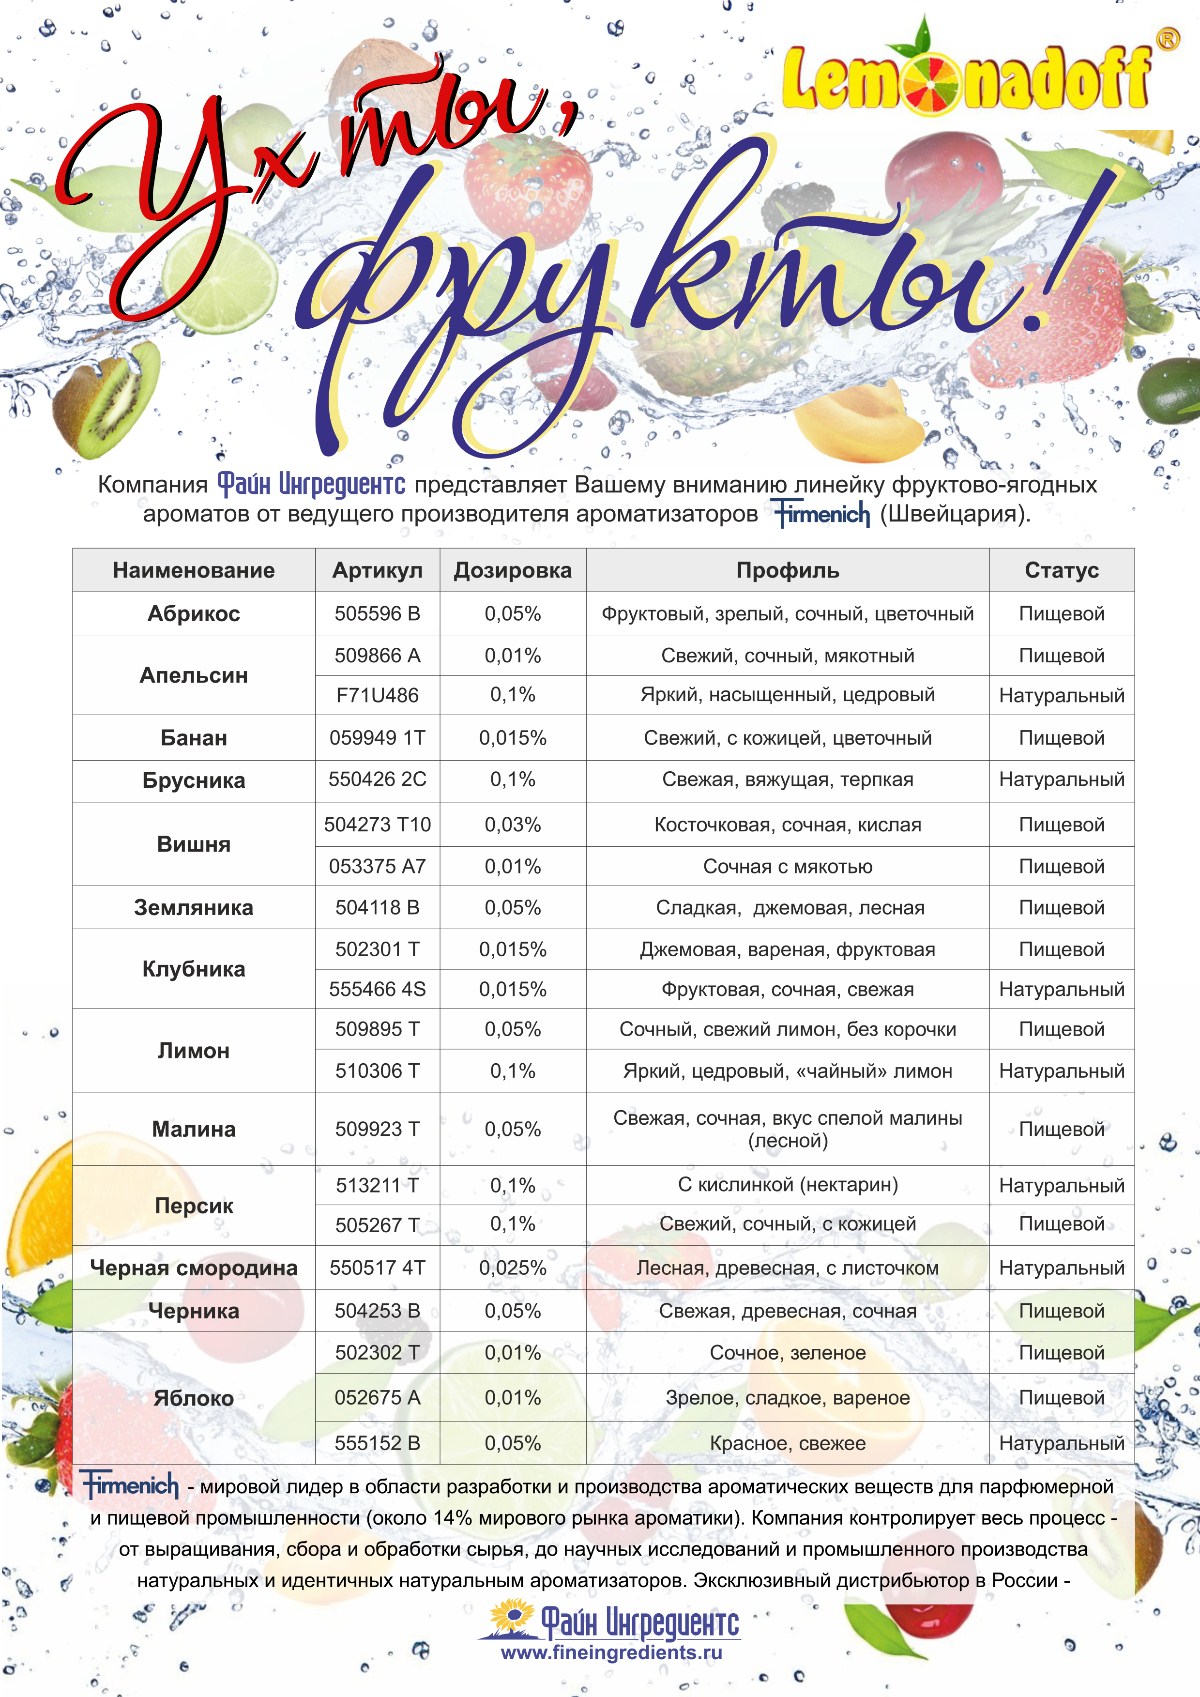 Фруктово-ягодные ароматы Firmenich